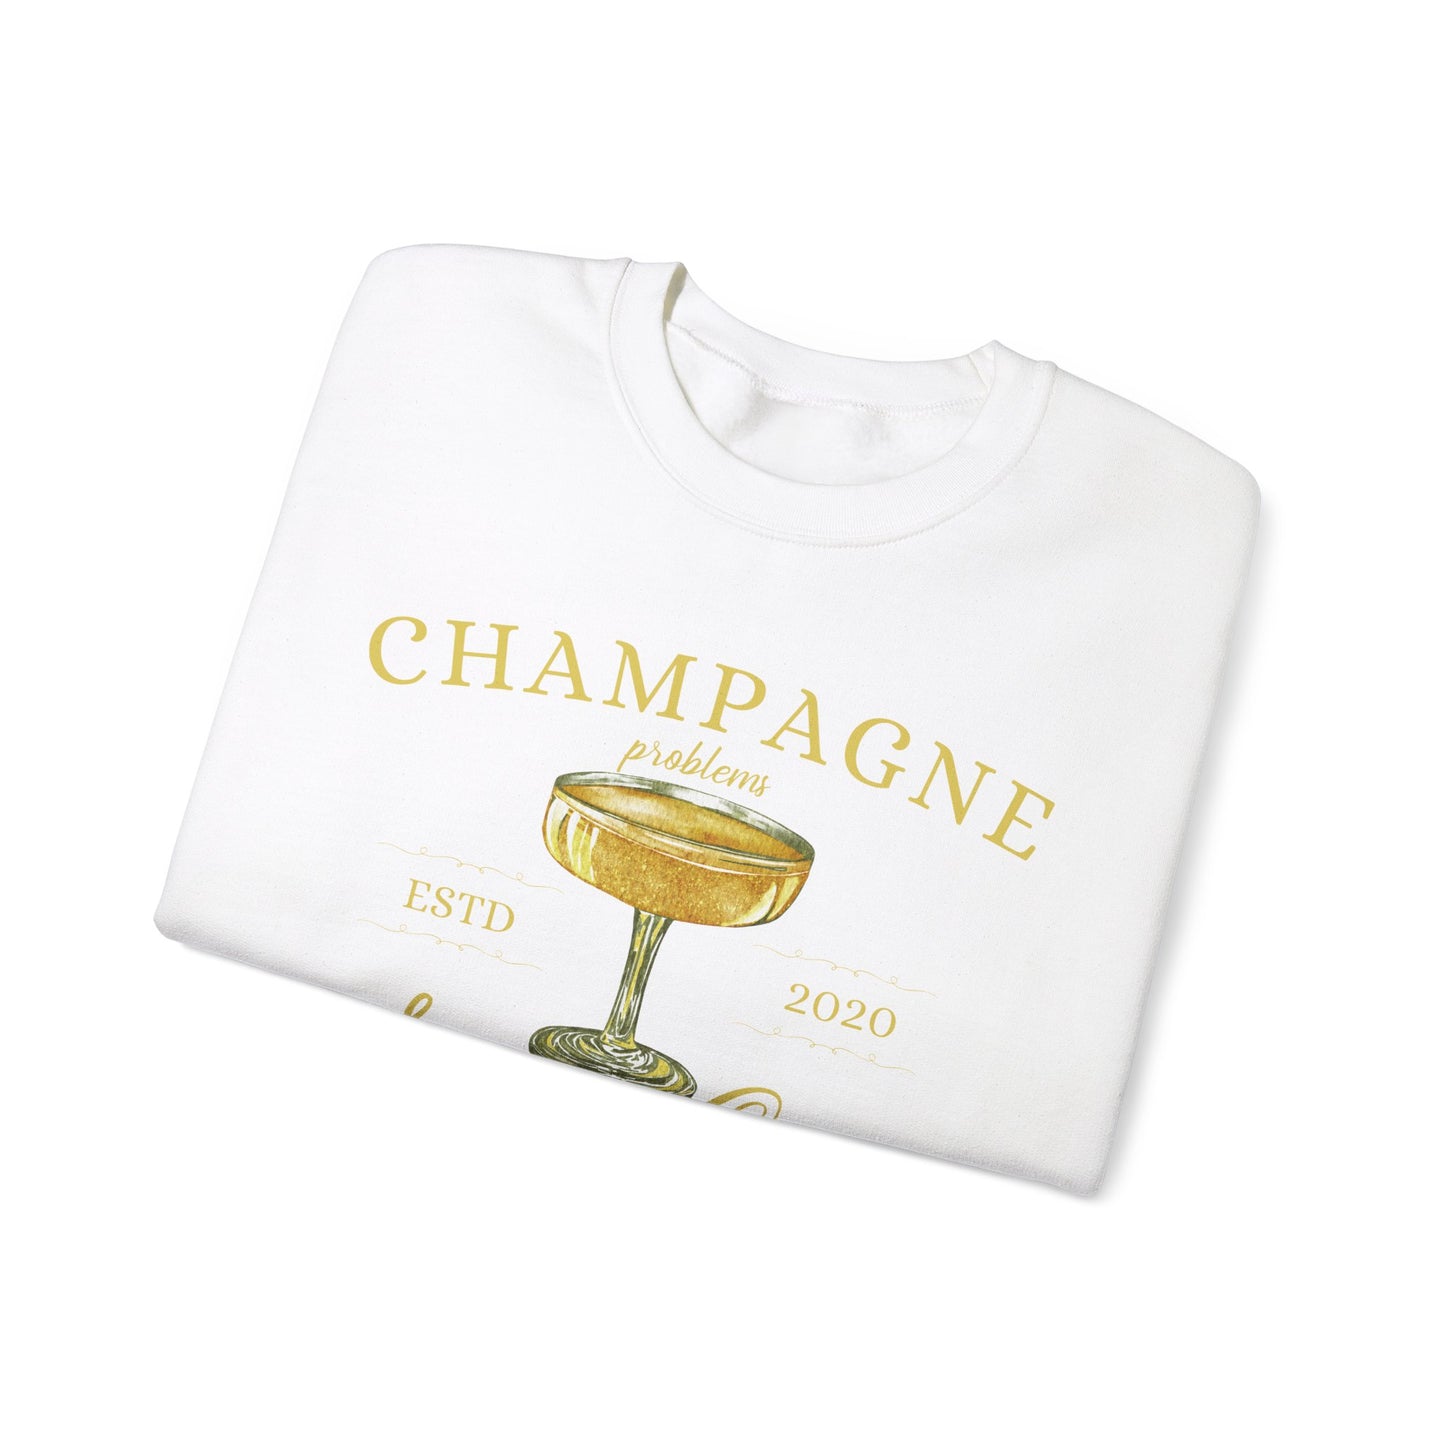 Champagne Social Club Sweatshirt